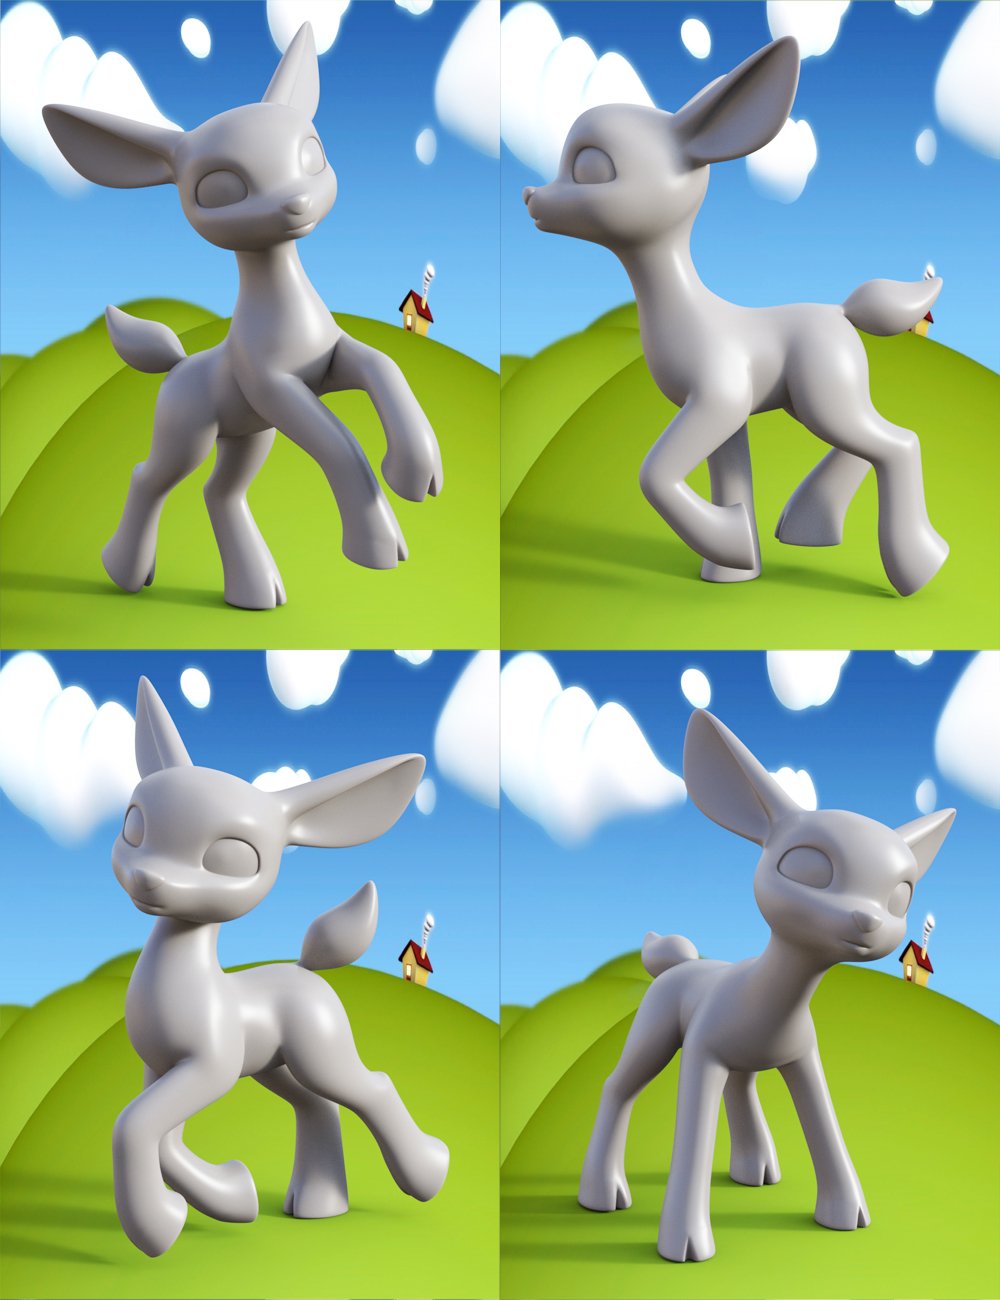 Lovely Precious Vol 01 -  Deer by: Muscleman, 3D Models by Daz 3D